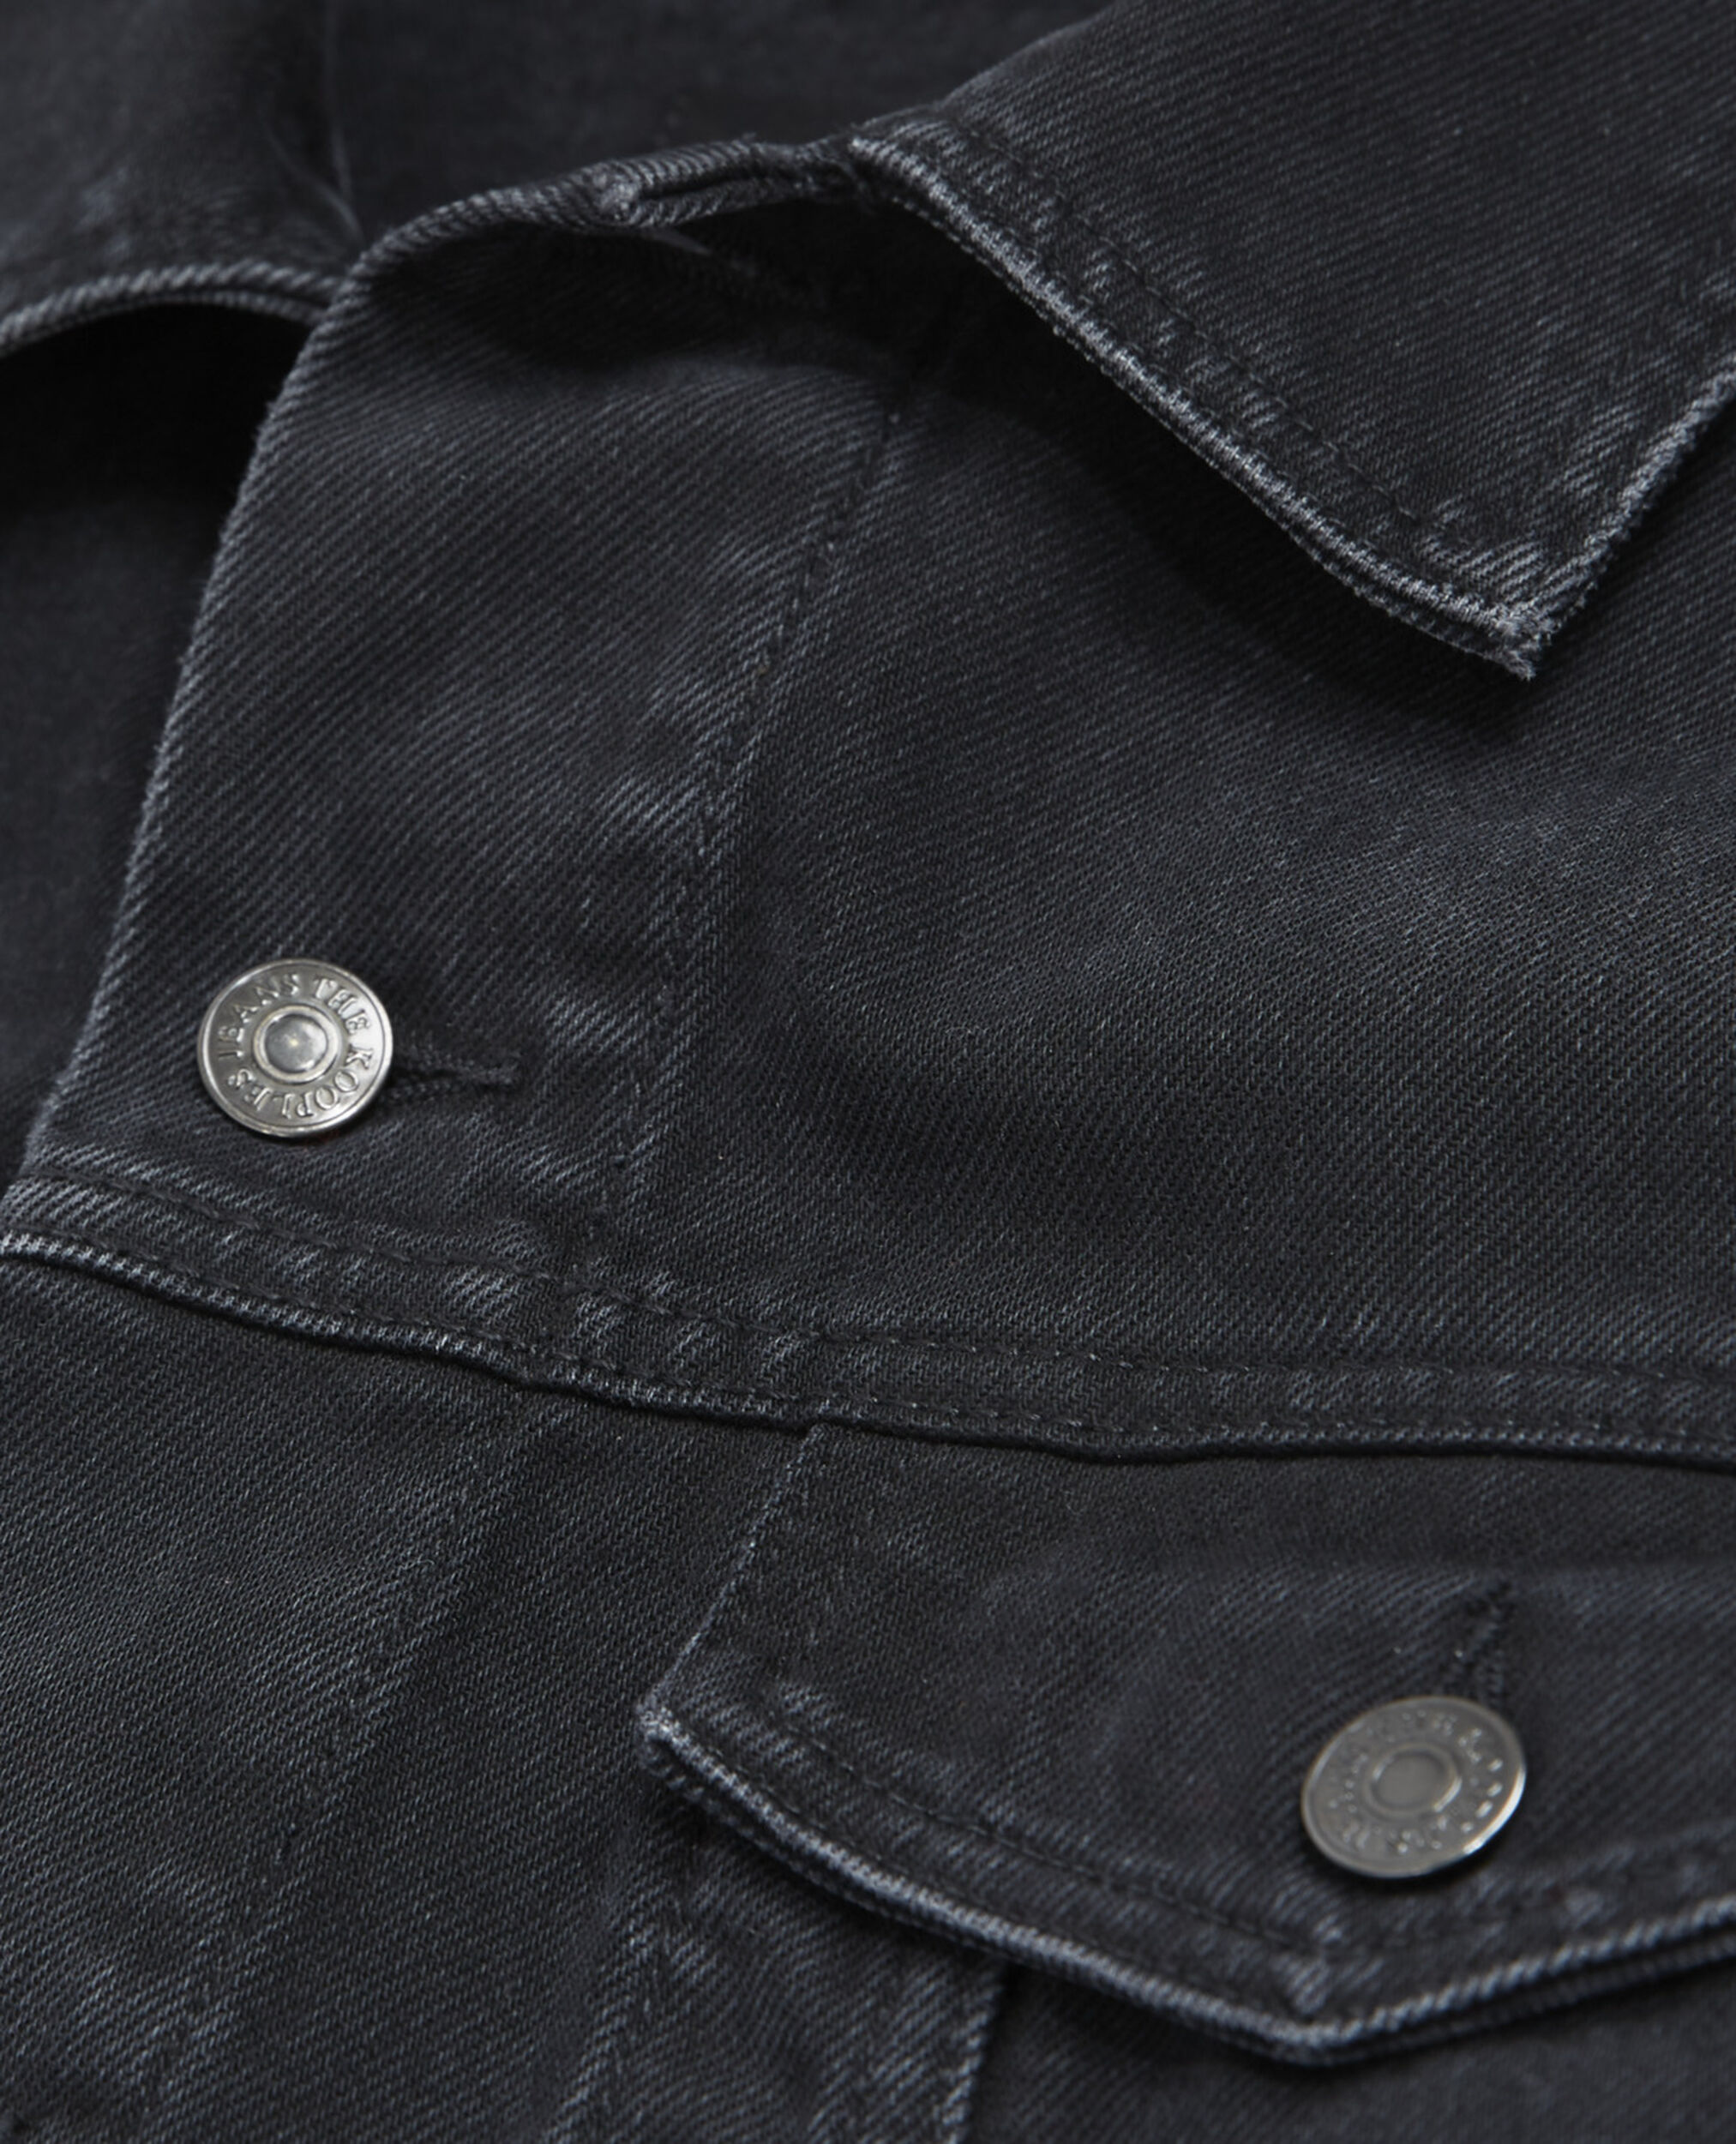 Blouson jean noir délavé poches poitrine, BLACK WASHED, hi-res image number null